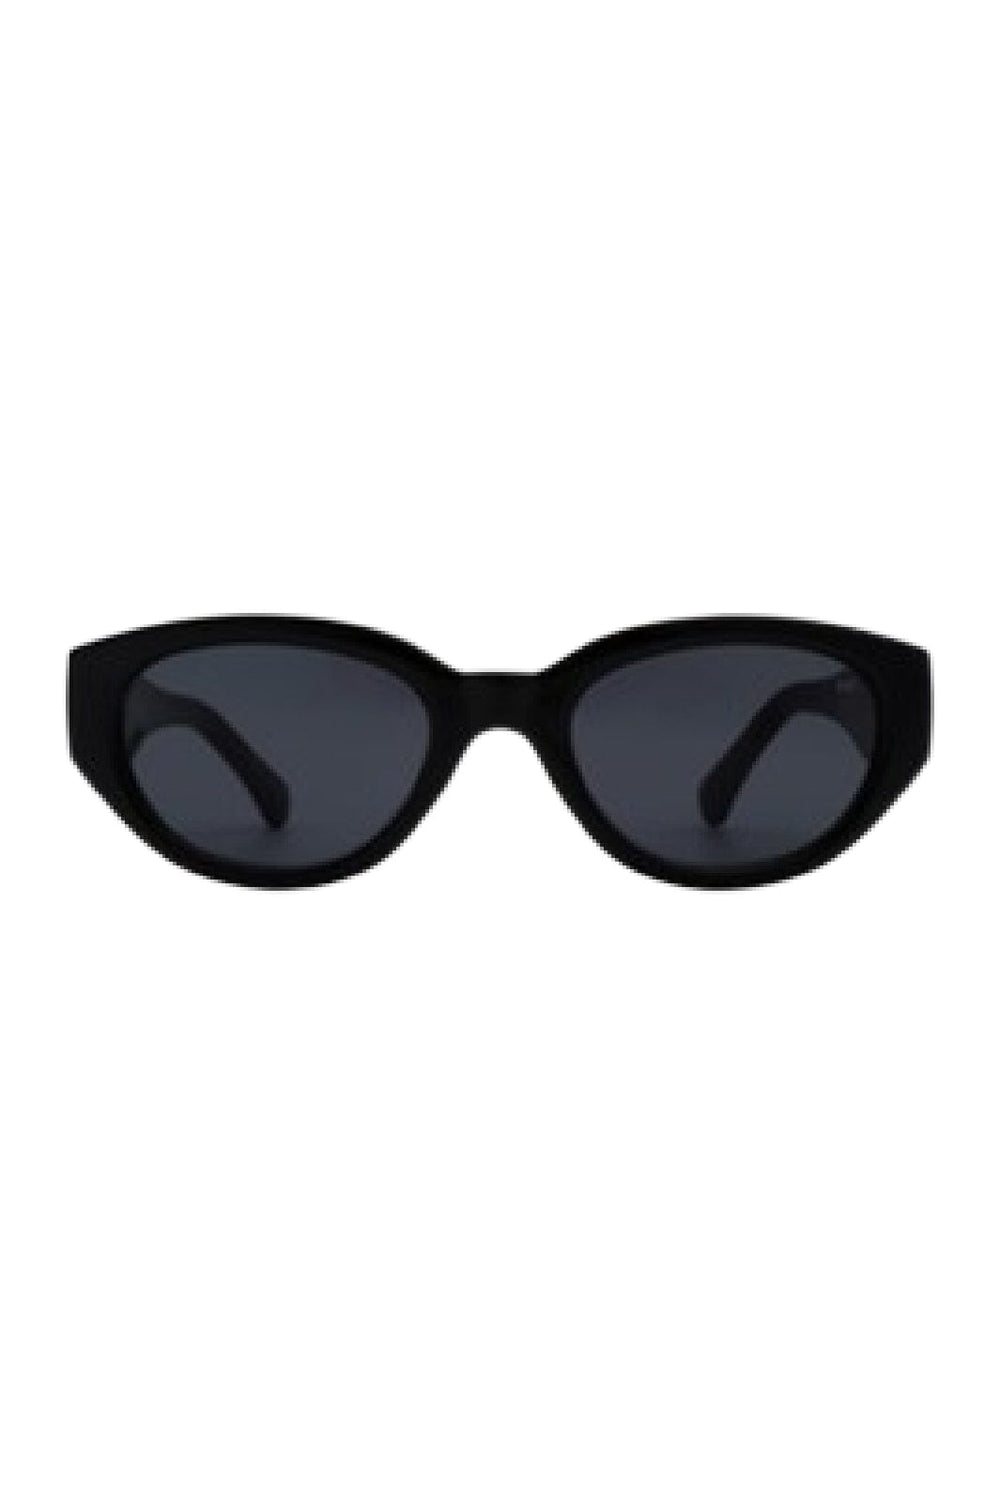 A. Kjærbede - Winnie - Black Solbriller 